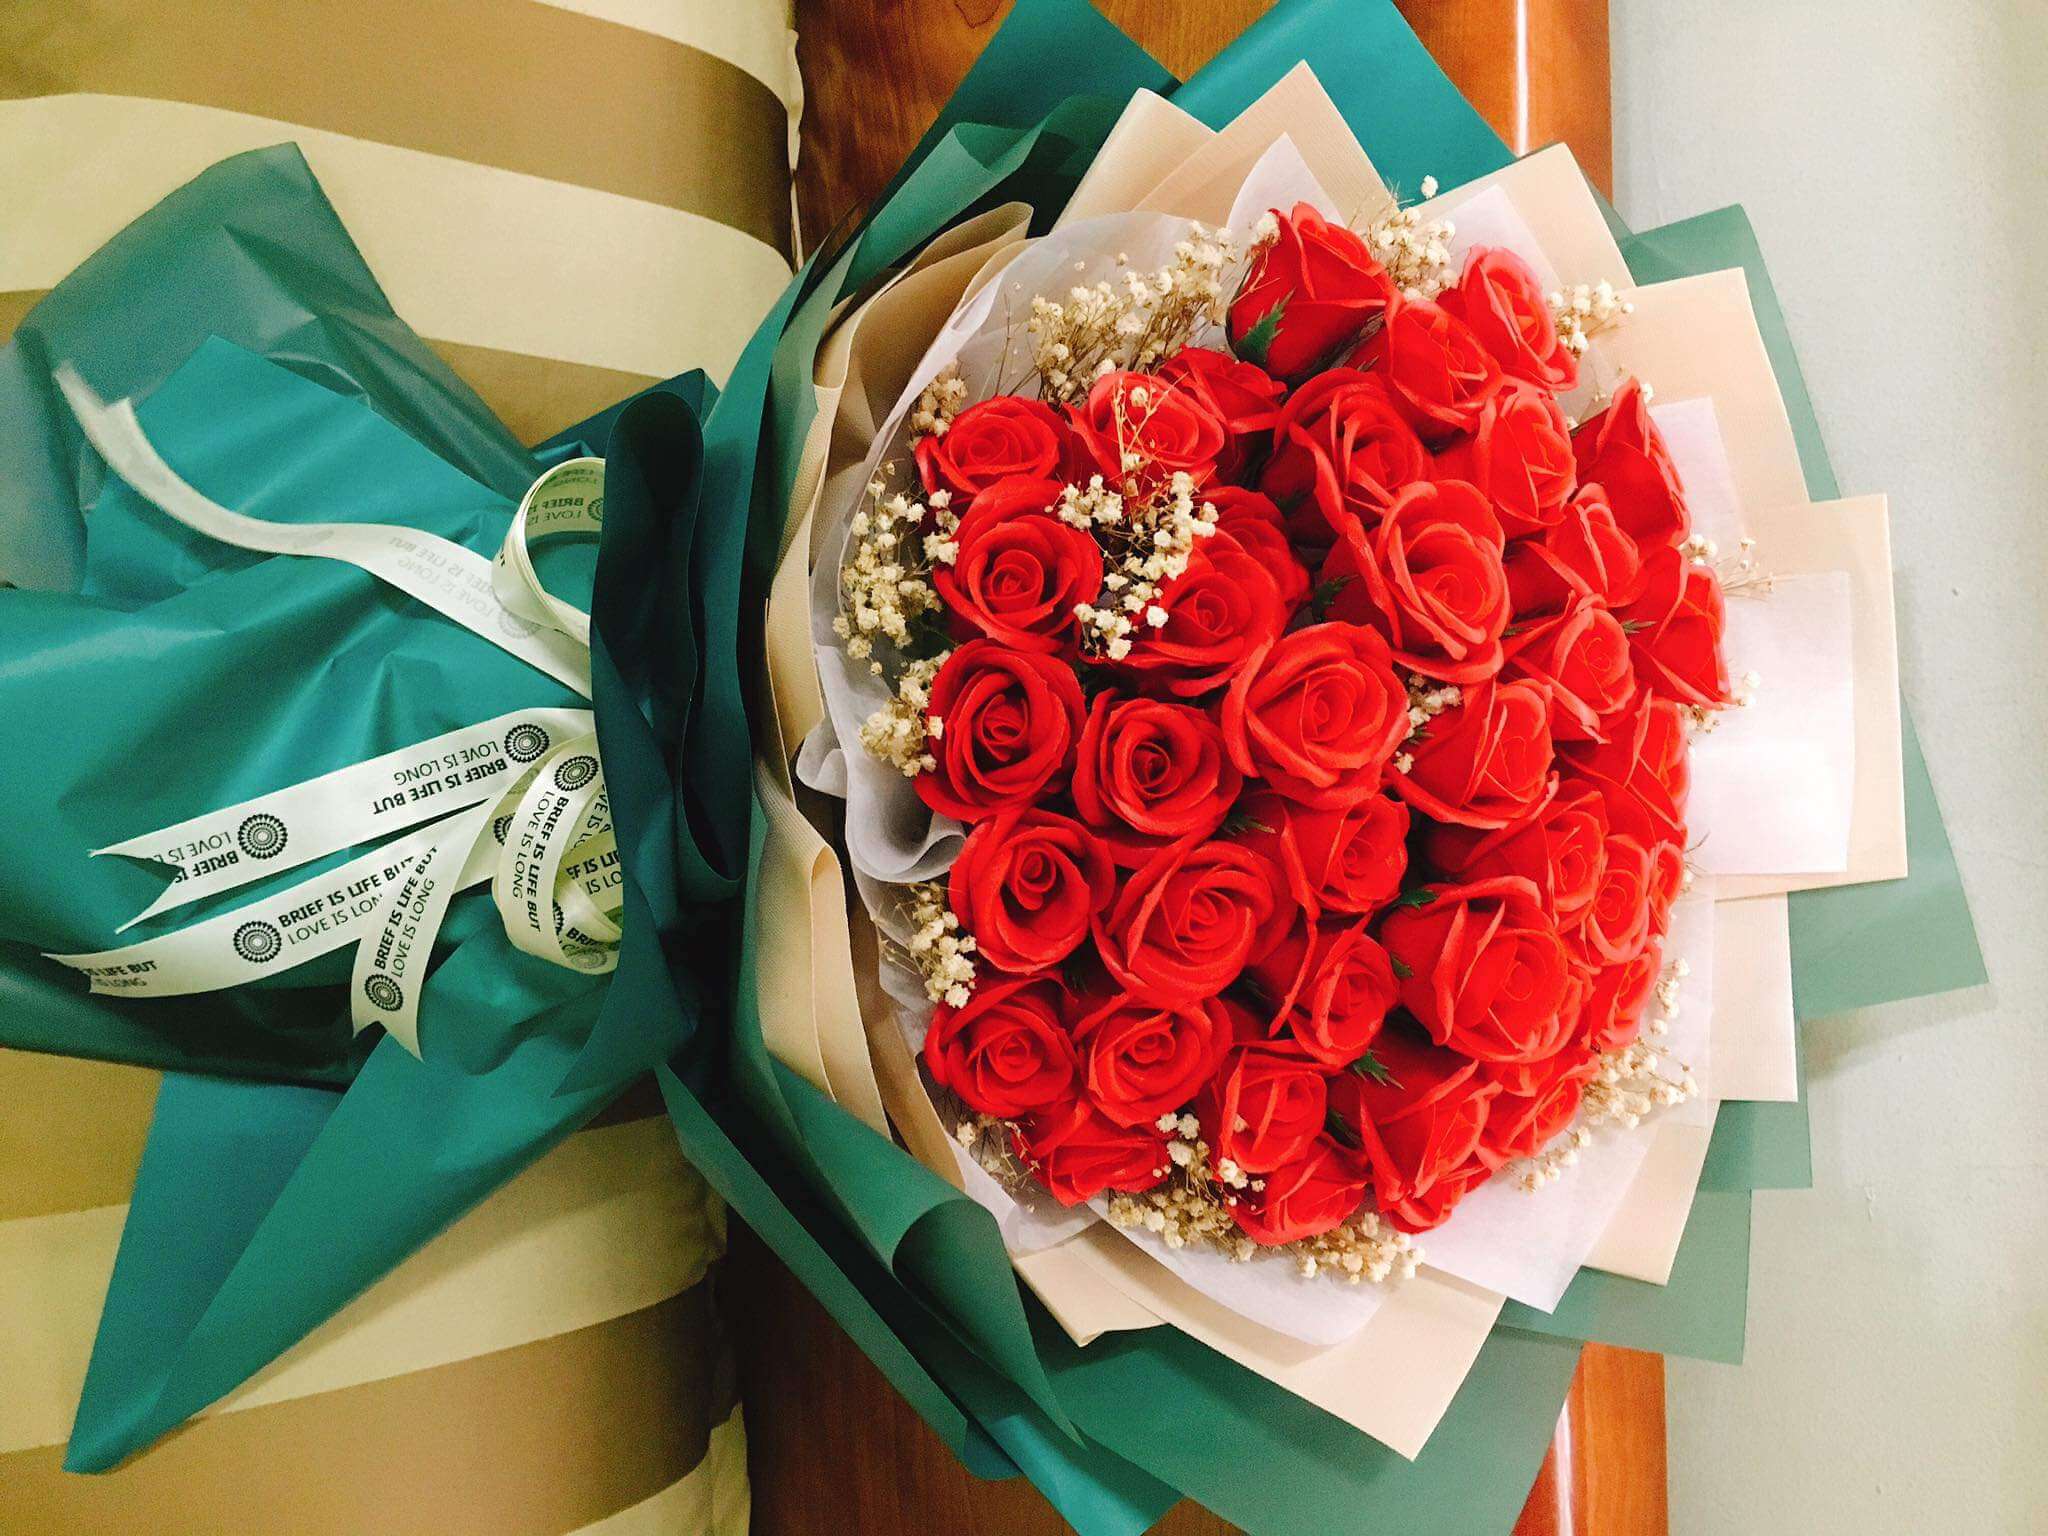 gửi hoa sáp tặng người yêu nhân ngày Valentine